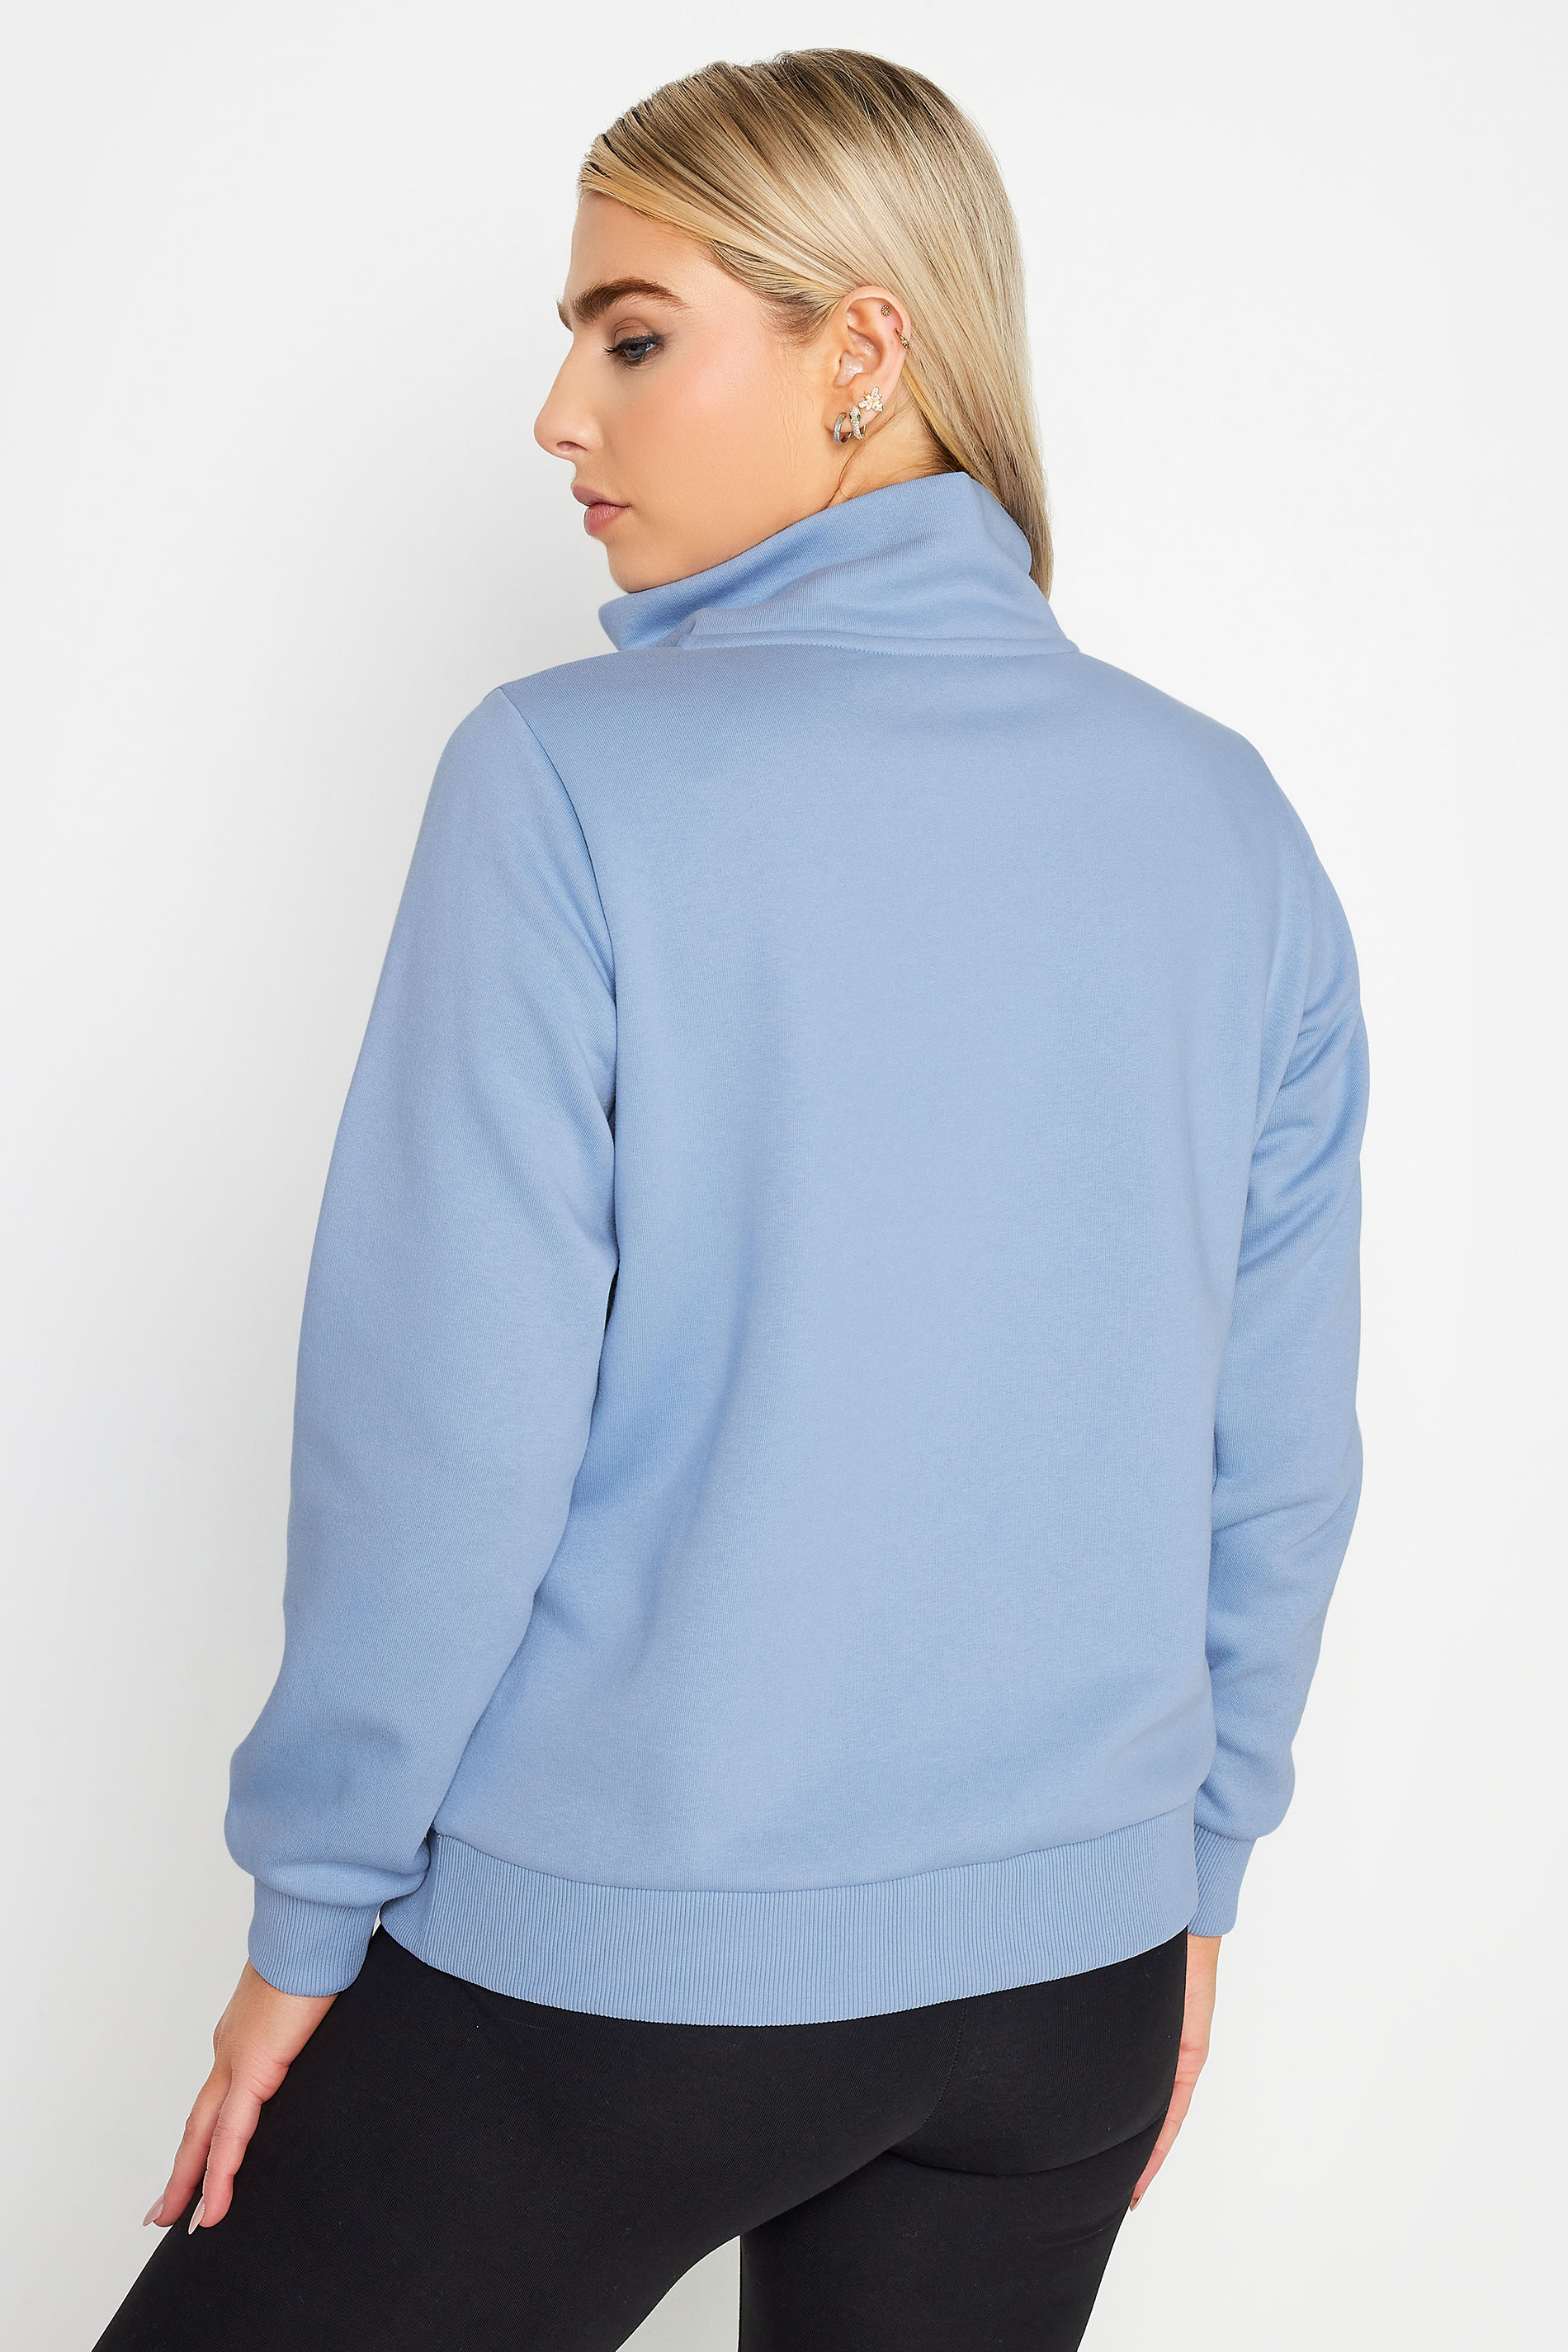 M&Co Blue Half Zip Sweatshirt | M&Co 3